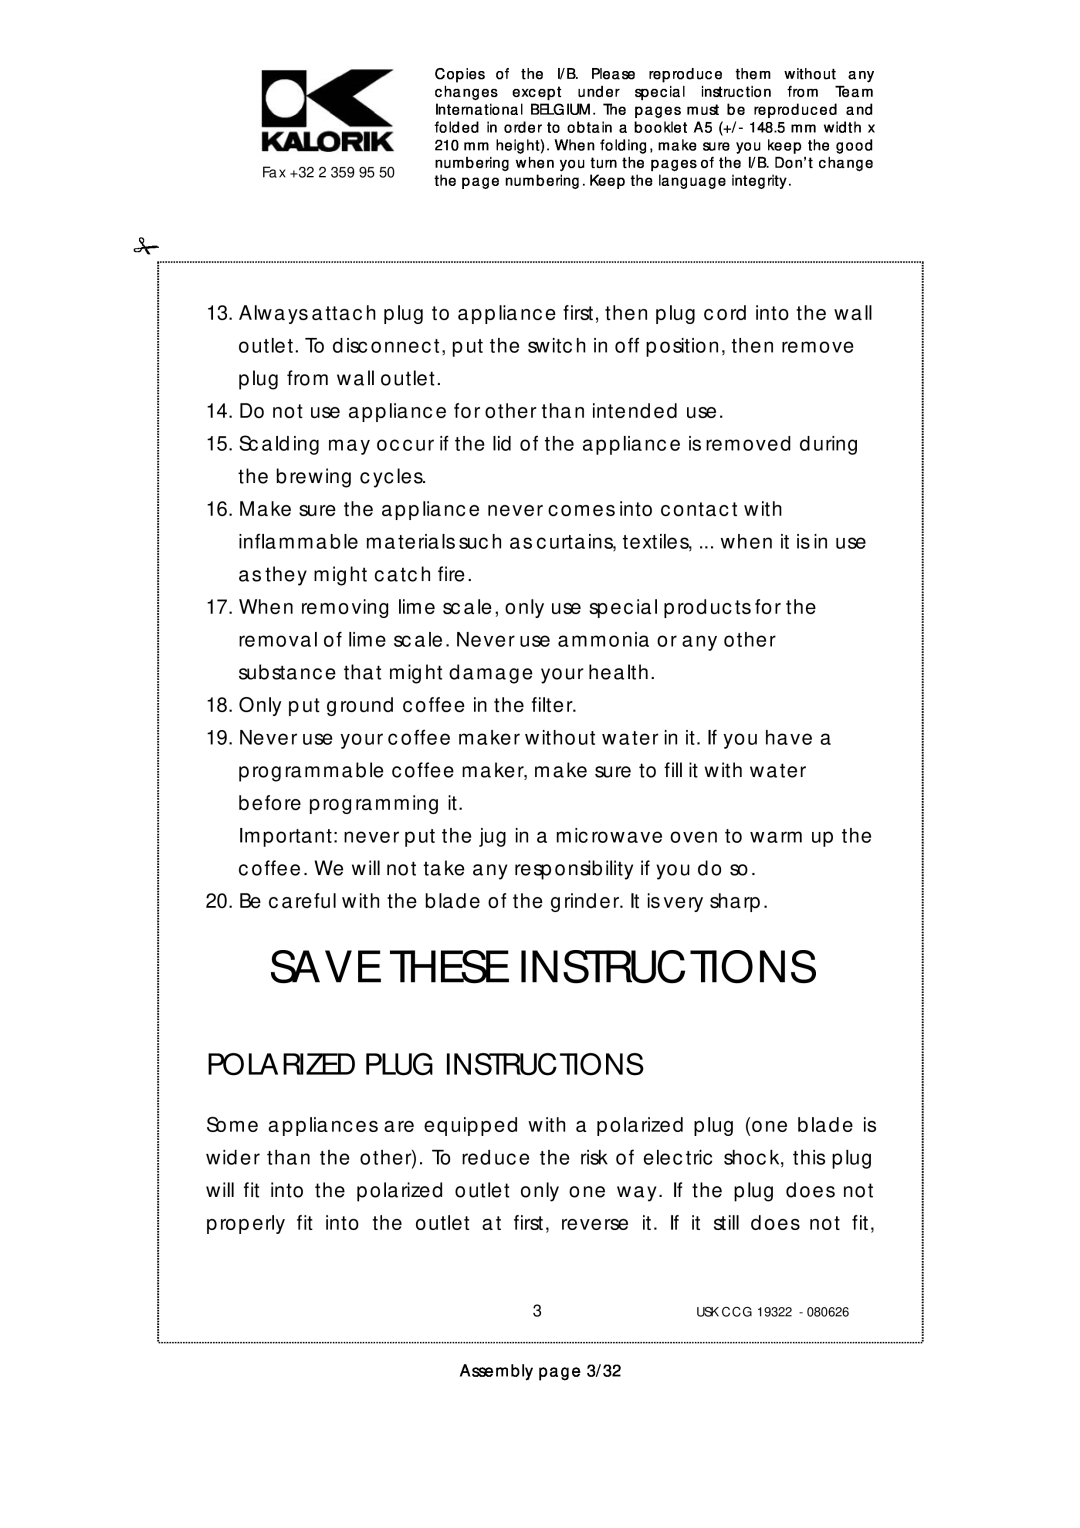 Kalorik USK CCG 19322, USK CCG080626 manual Save These Instructions, Polarized Plug Instructions 